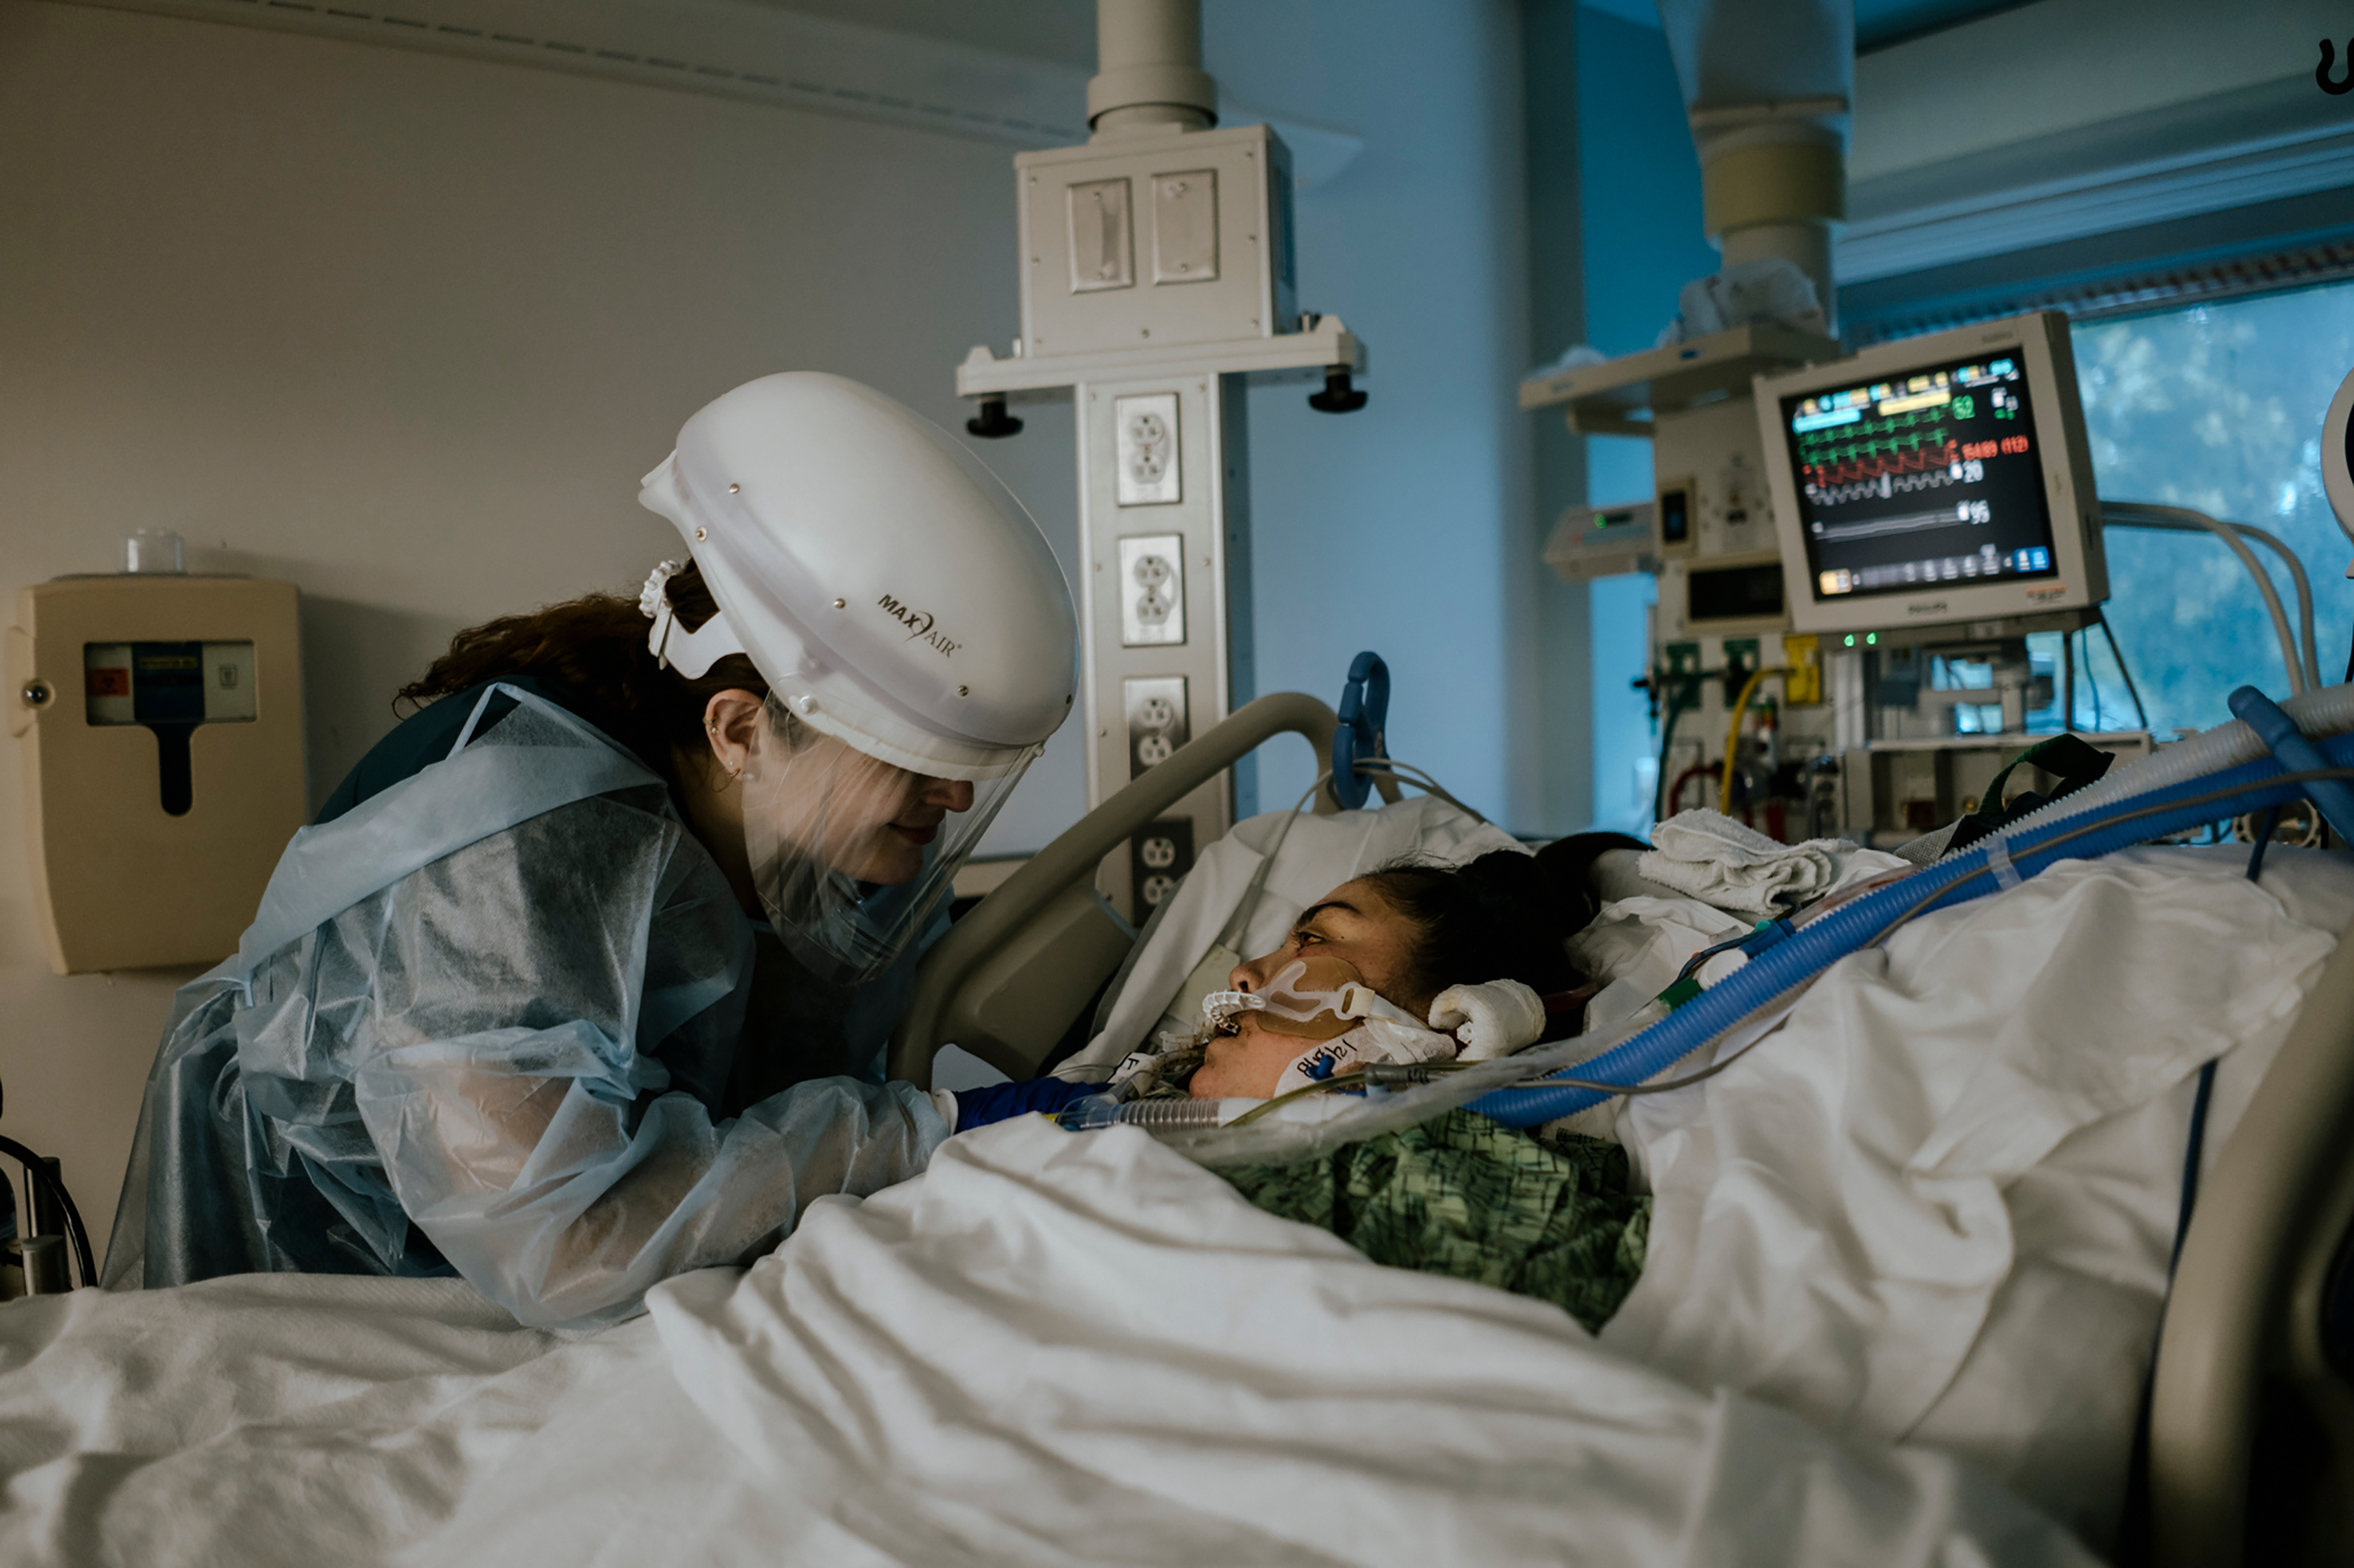 La enfermera Gena Oppenheim atiende a su paciente, Jessica Flores, una artista visual de 32 años que estaba intubada e inconsciente, en el Providence Saint John's Health Center de Santa Mónica, California, el 18 de agosto de 2021. (Foto Prensa Libre: Isadora Kosofsky/The New York Times)